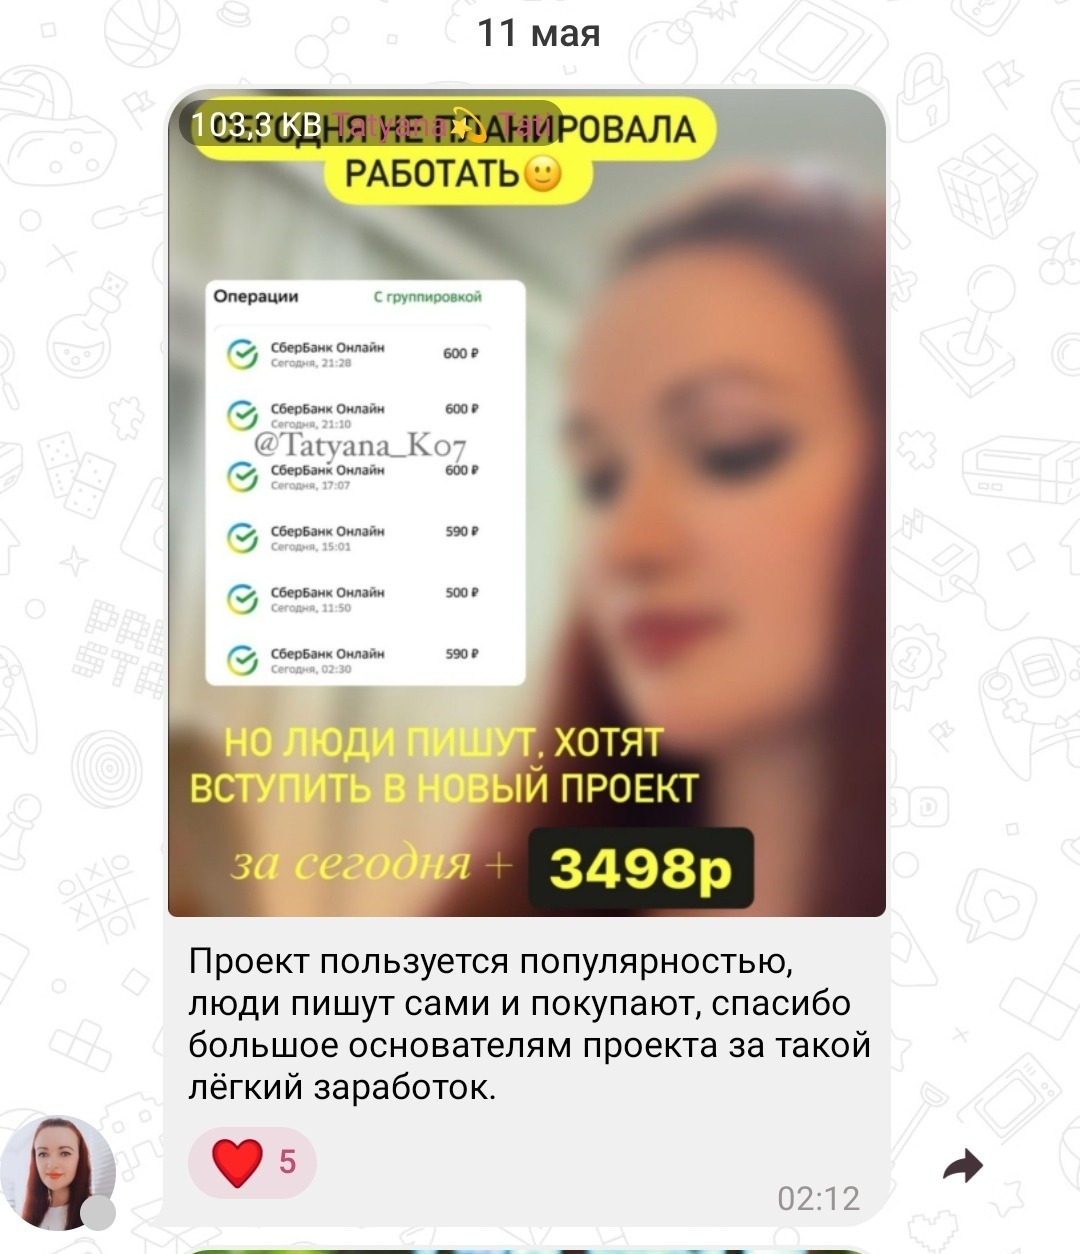 Бесплатный заработок в телеграмме без вложений на русском языке фото 108